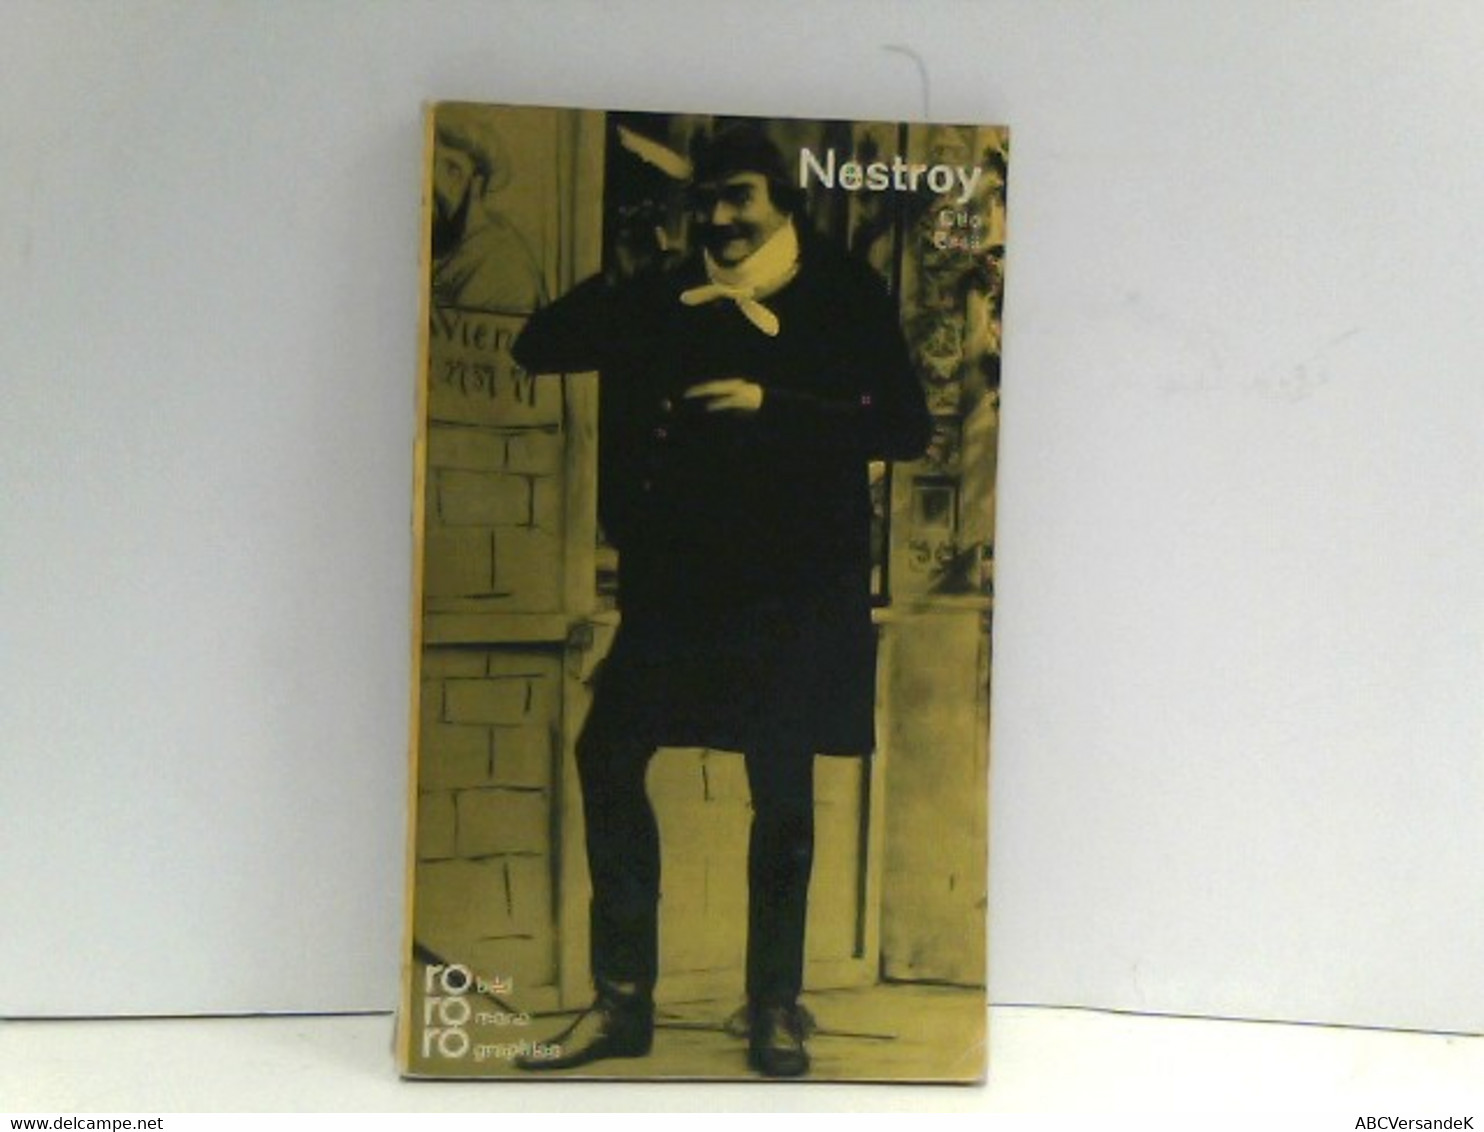 Nestroy, Johann (rororo - Rowohlts Monographien, Band 50132) - Biographien & Memoiren